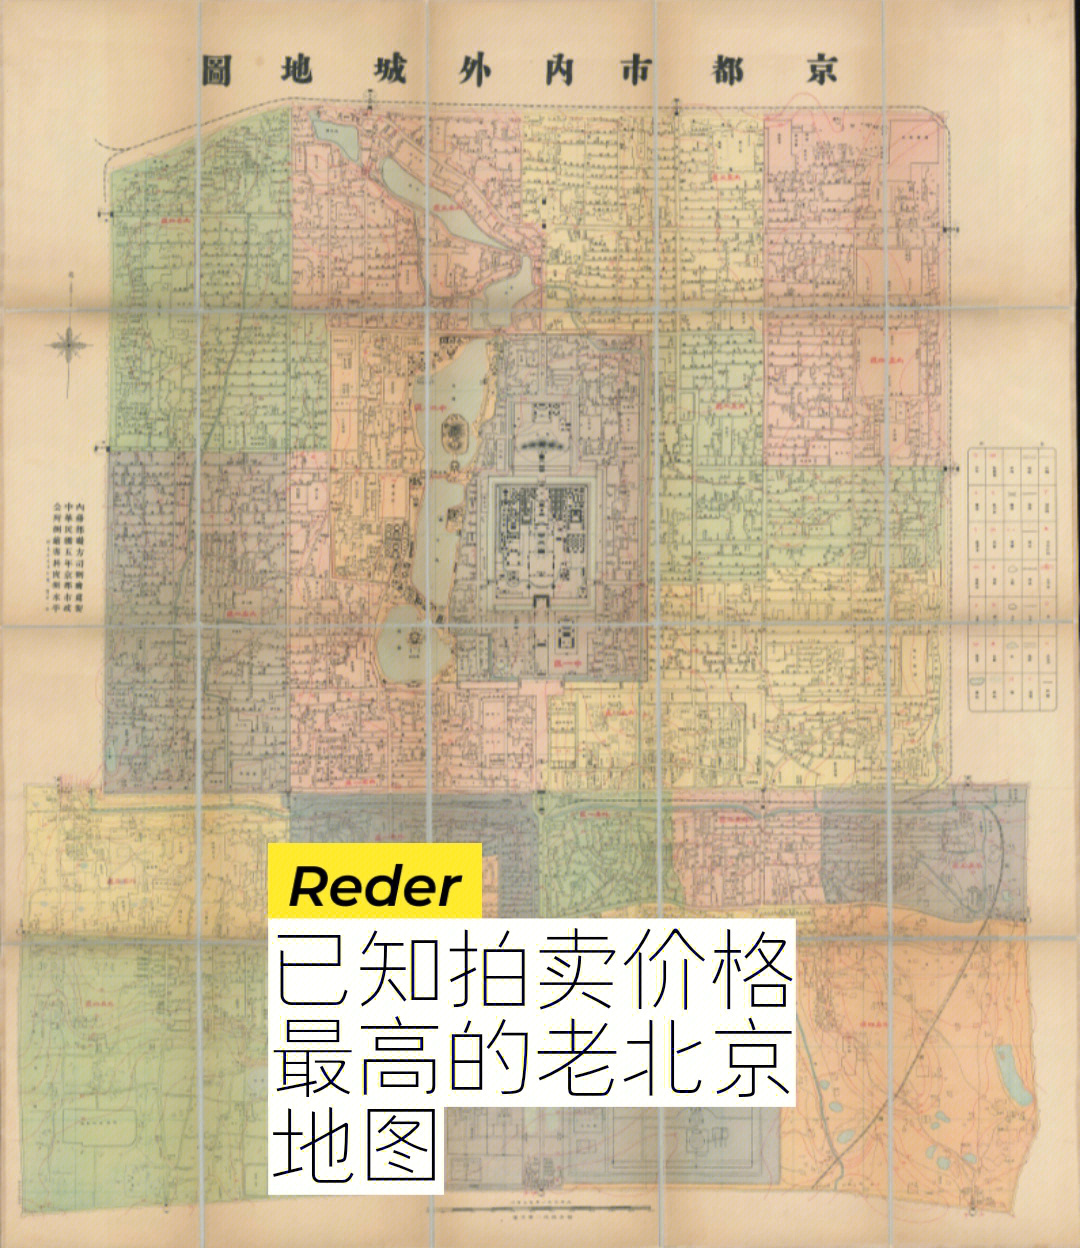 05一张罕见且珍贵的老北京地图